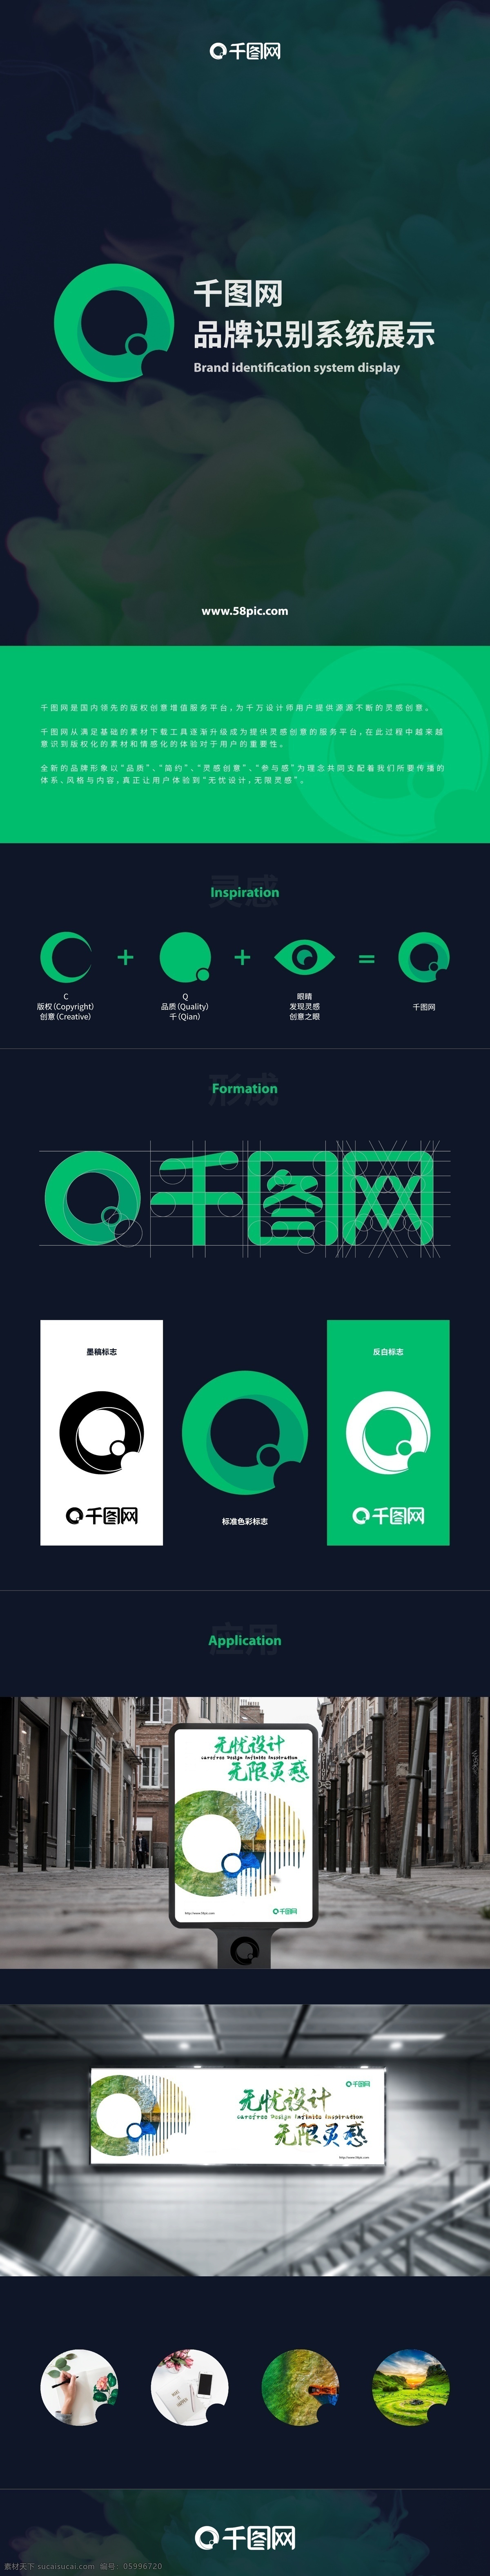 千 图 网 品牌 识别 系统 官方 企业 logo 展示